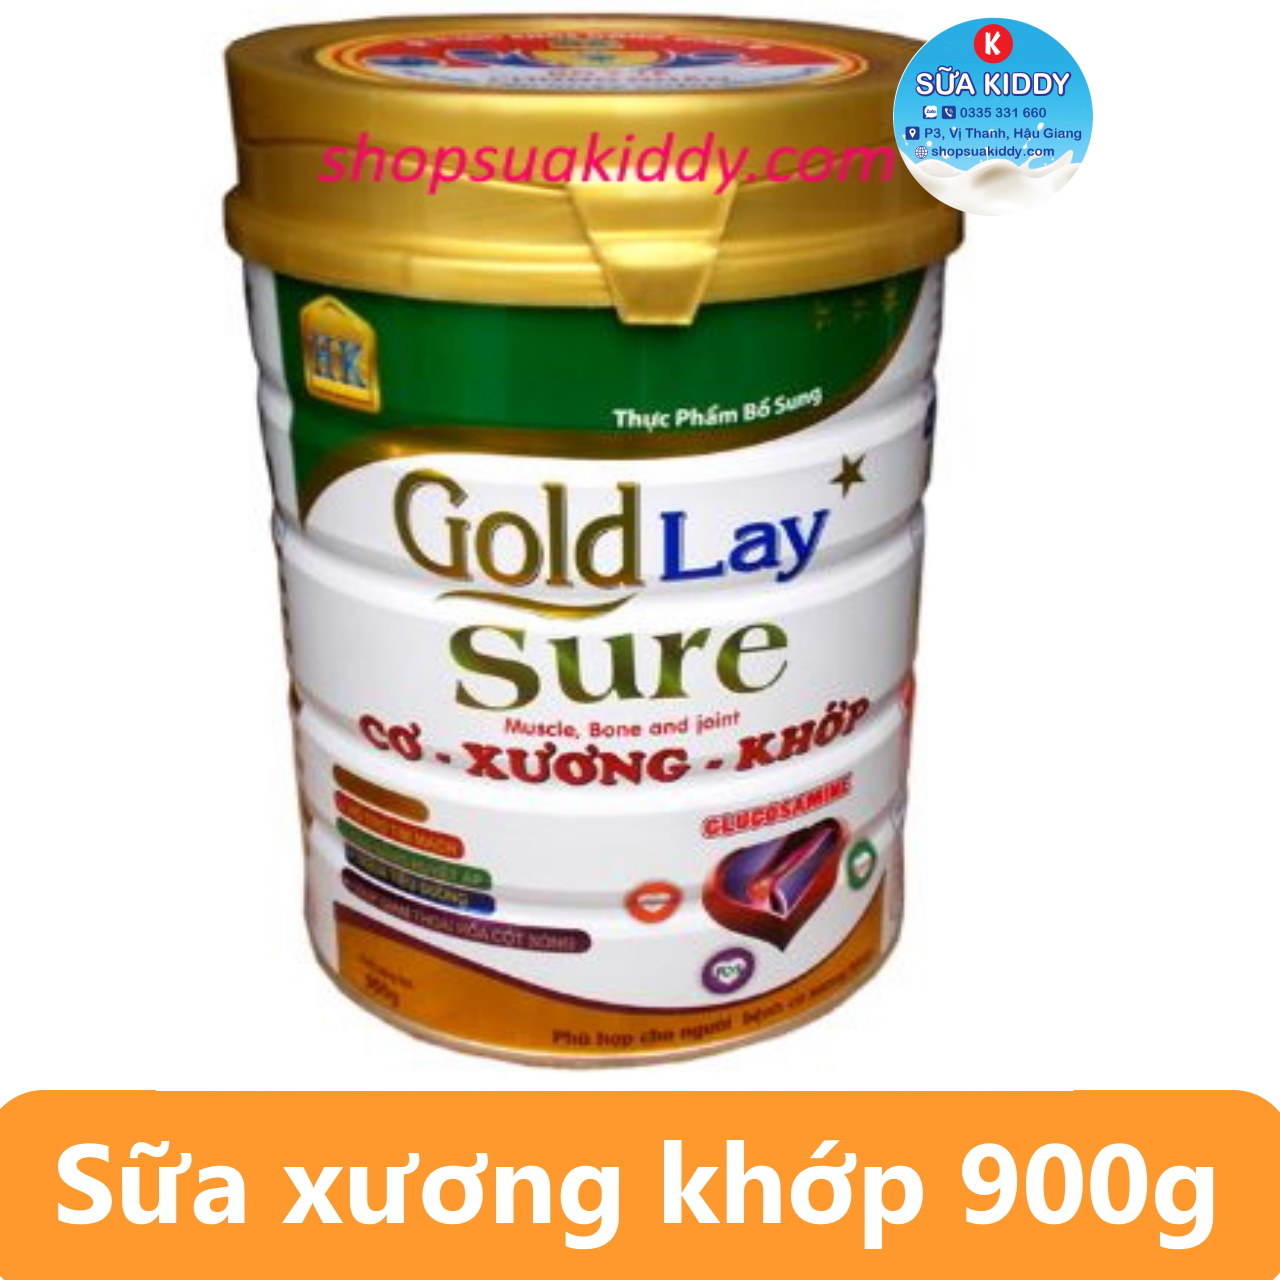 Sữa Goldlay Sure 900g dinh dưỡng chuyên biêt cho CƠ XƯƠNG KHỚP với Glucosamine (gold lay)